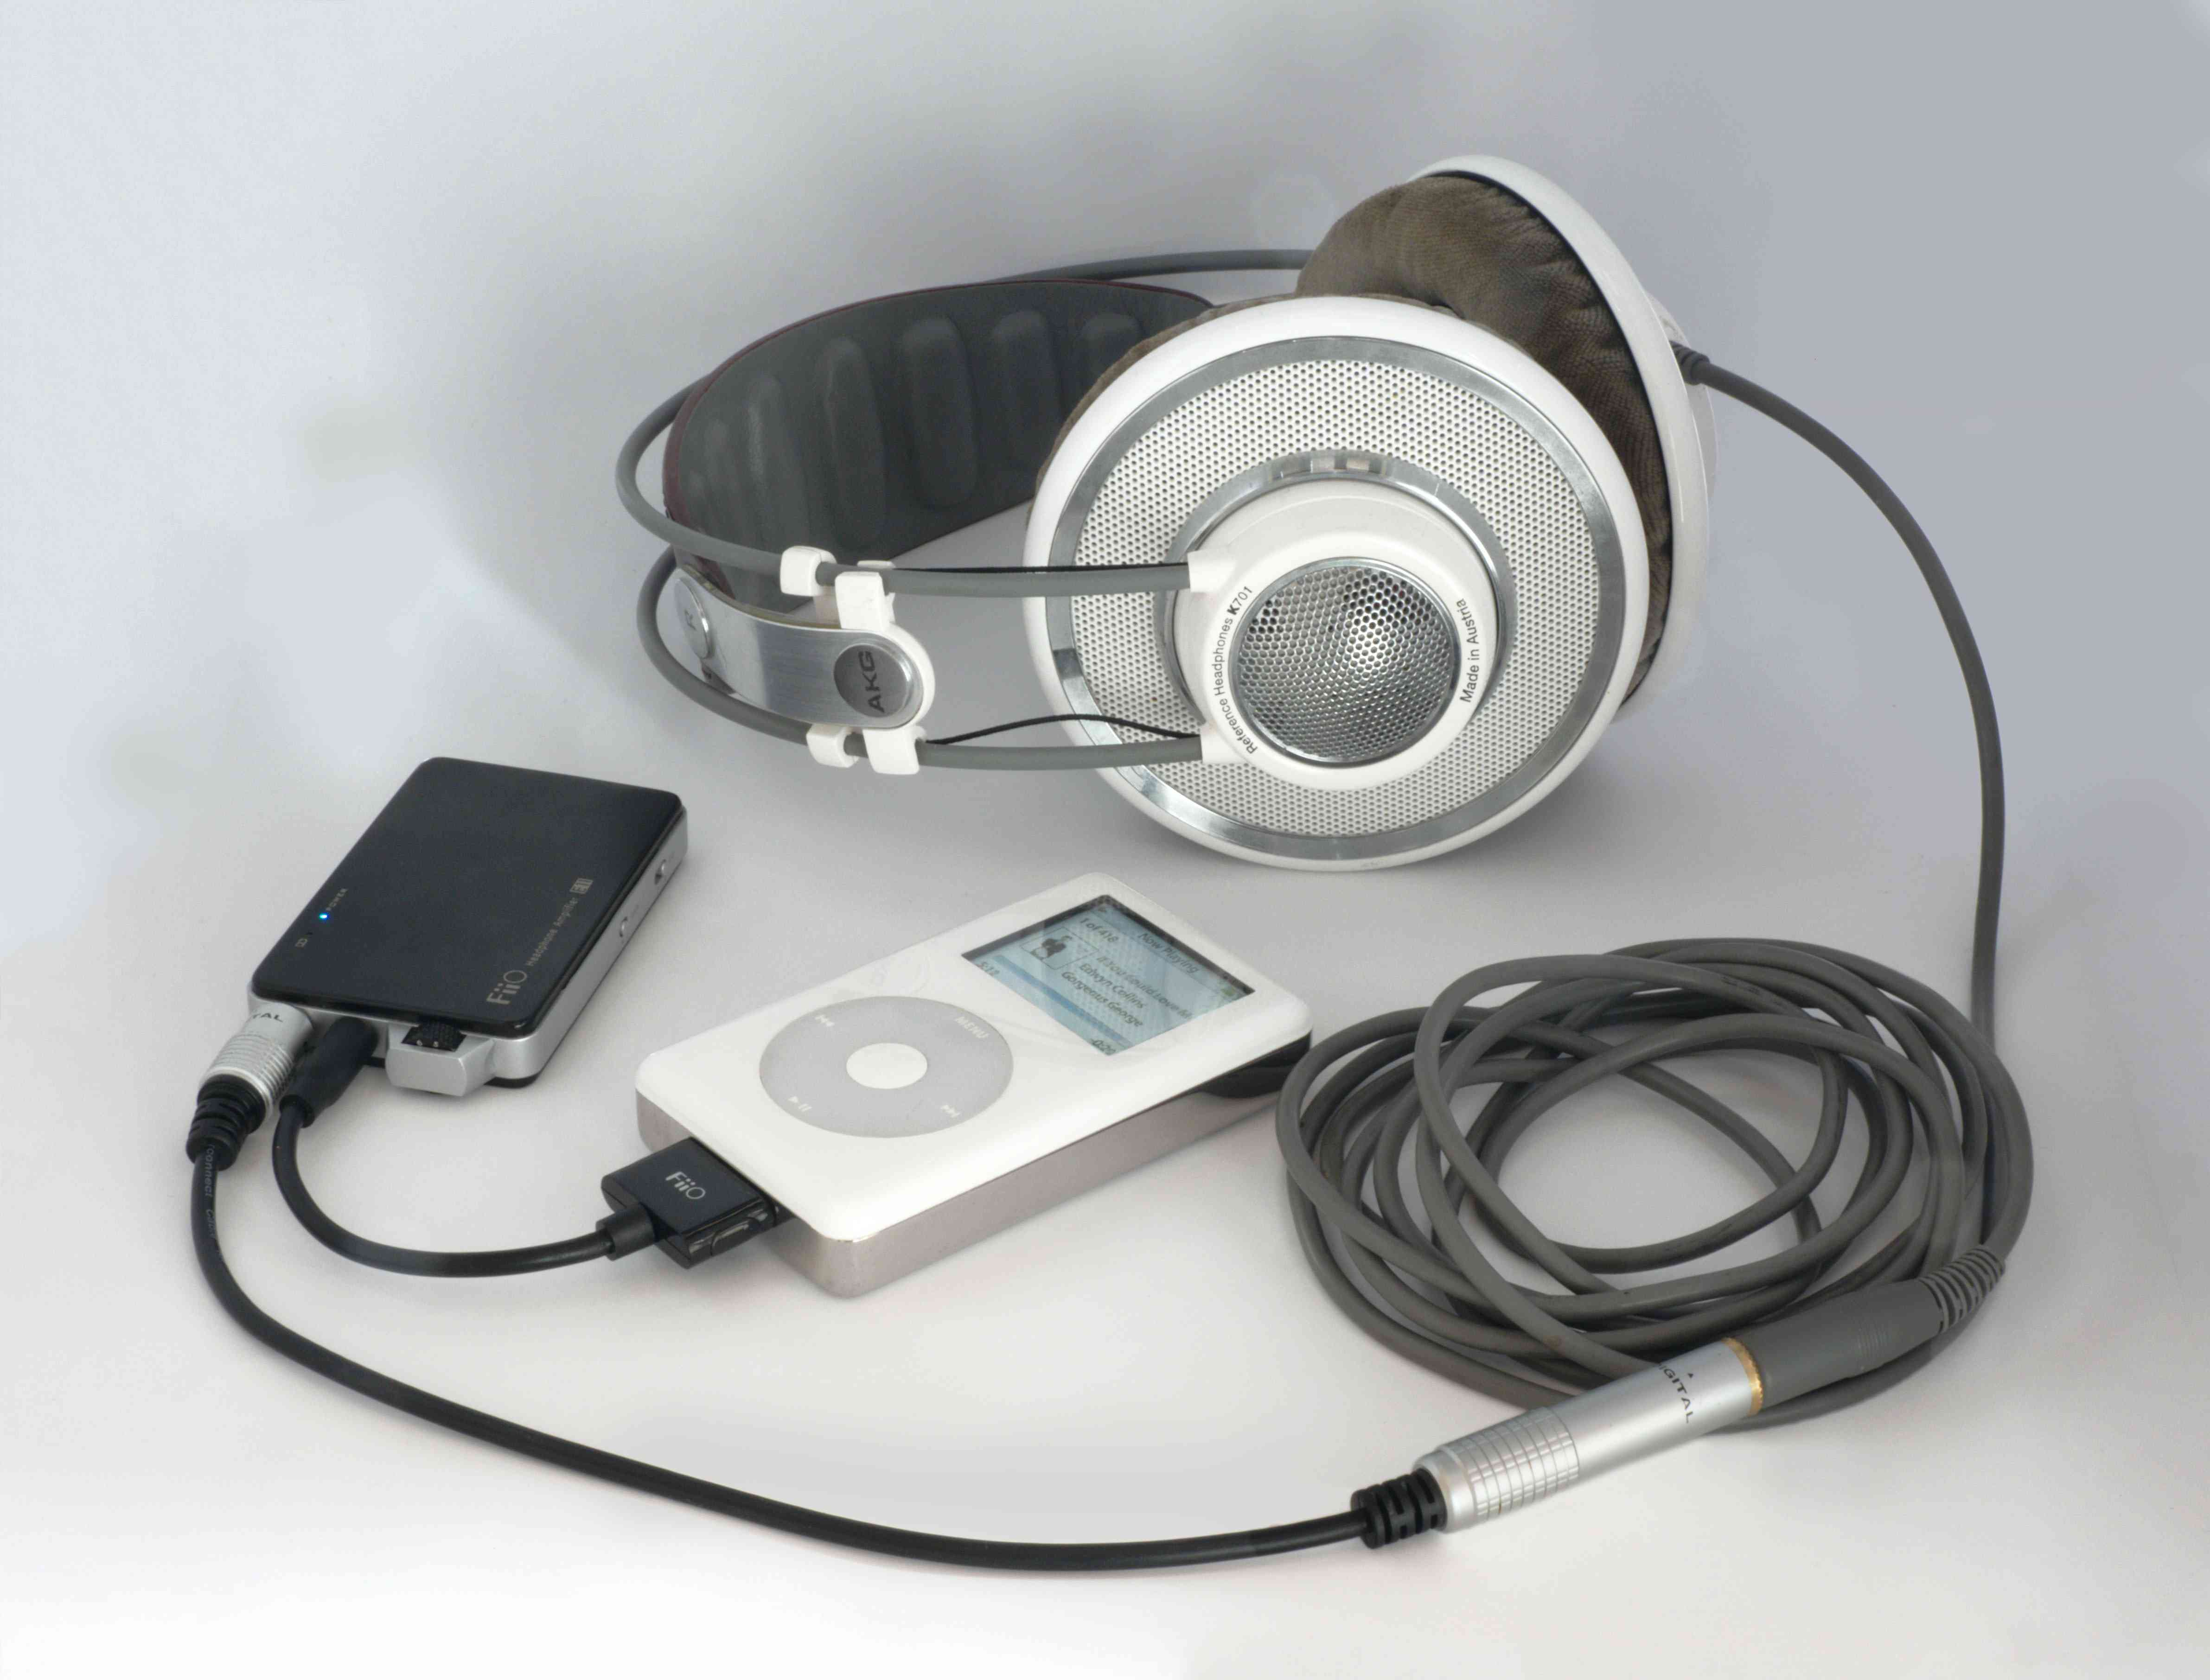 Stříbrná a bílá sluchátka se připojují k DAC připojenému k Apple iPod. 